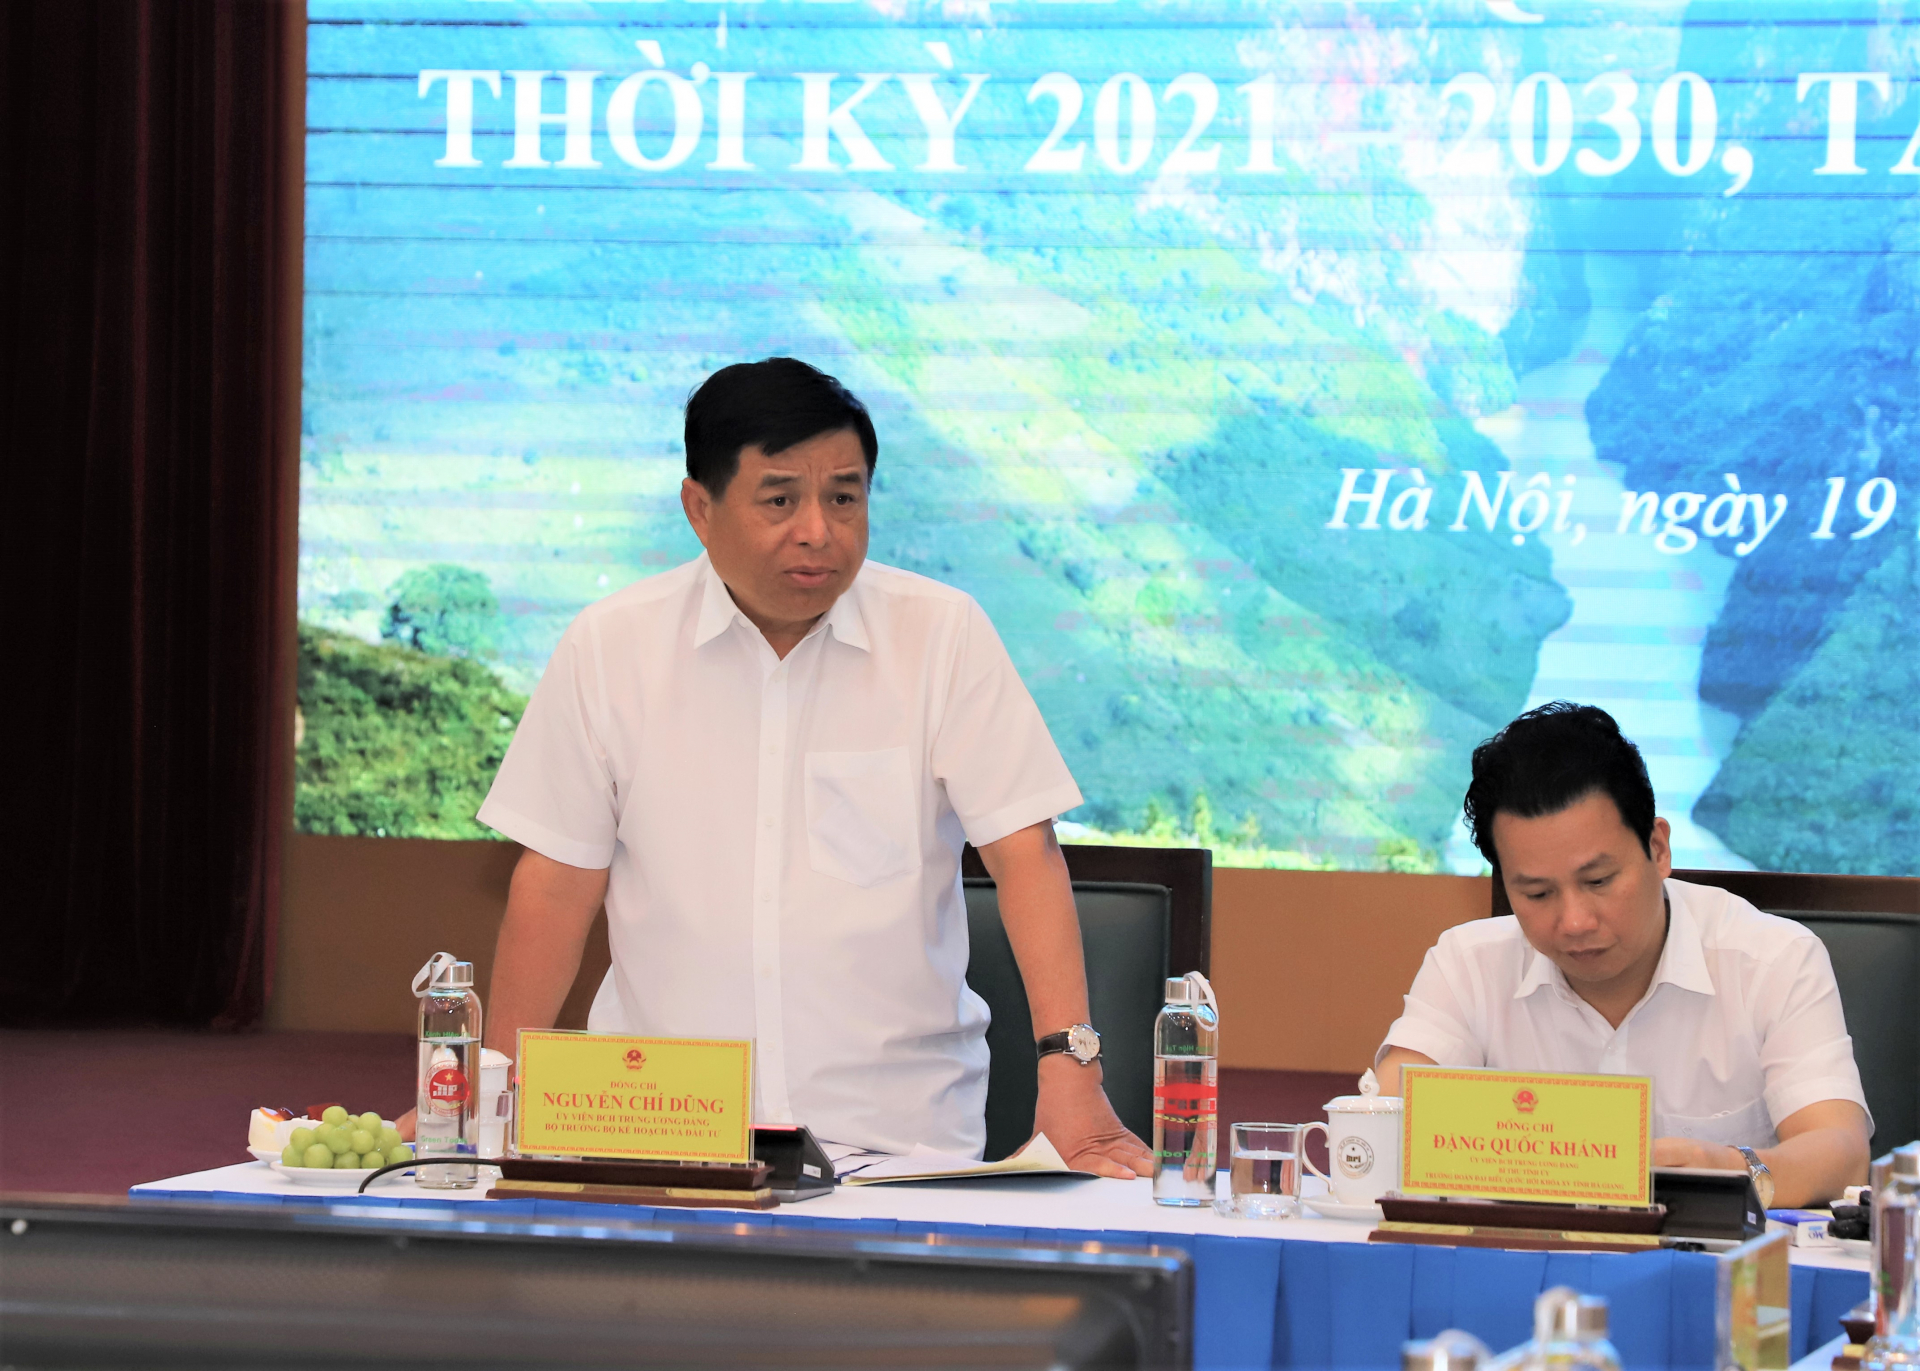 Đồng chí Nguyễn Chí Dũng, Ủy viên BCH T.Ư Đảng, Bộ trưởng Bộ Kế hoạch và Đầu tư phát biểu định hướng tại buổi làm việc.